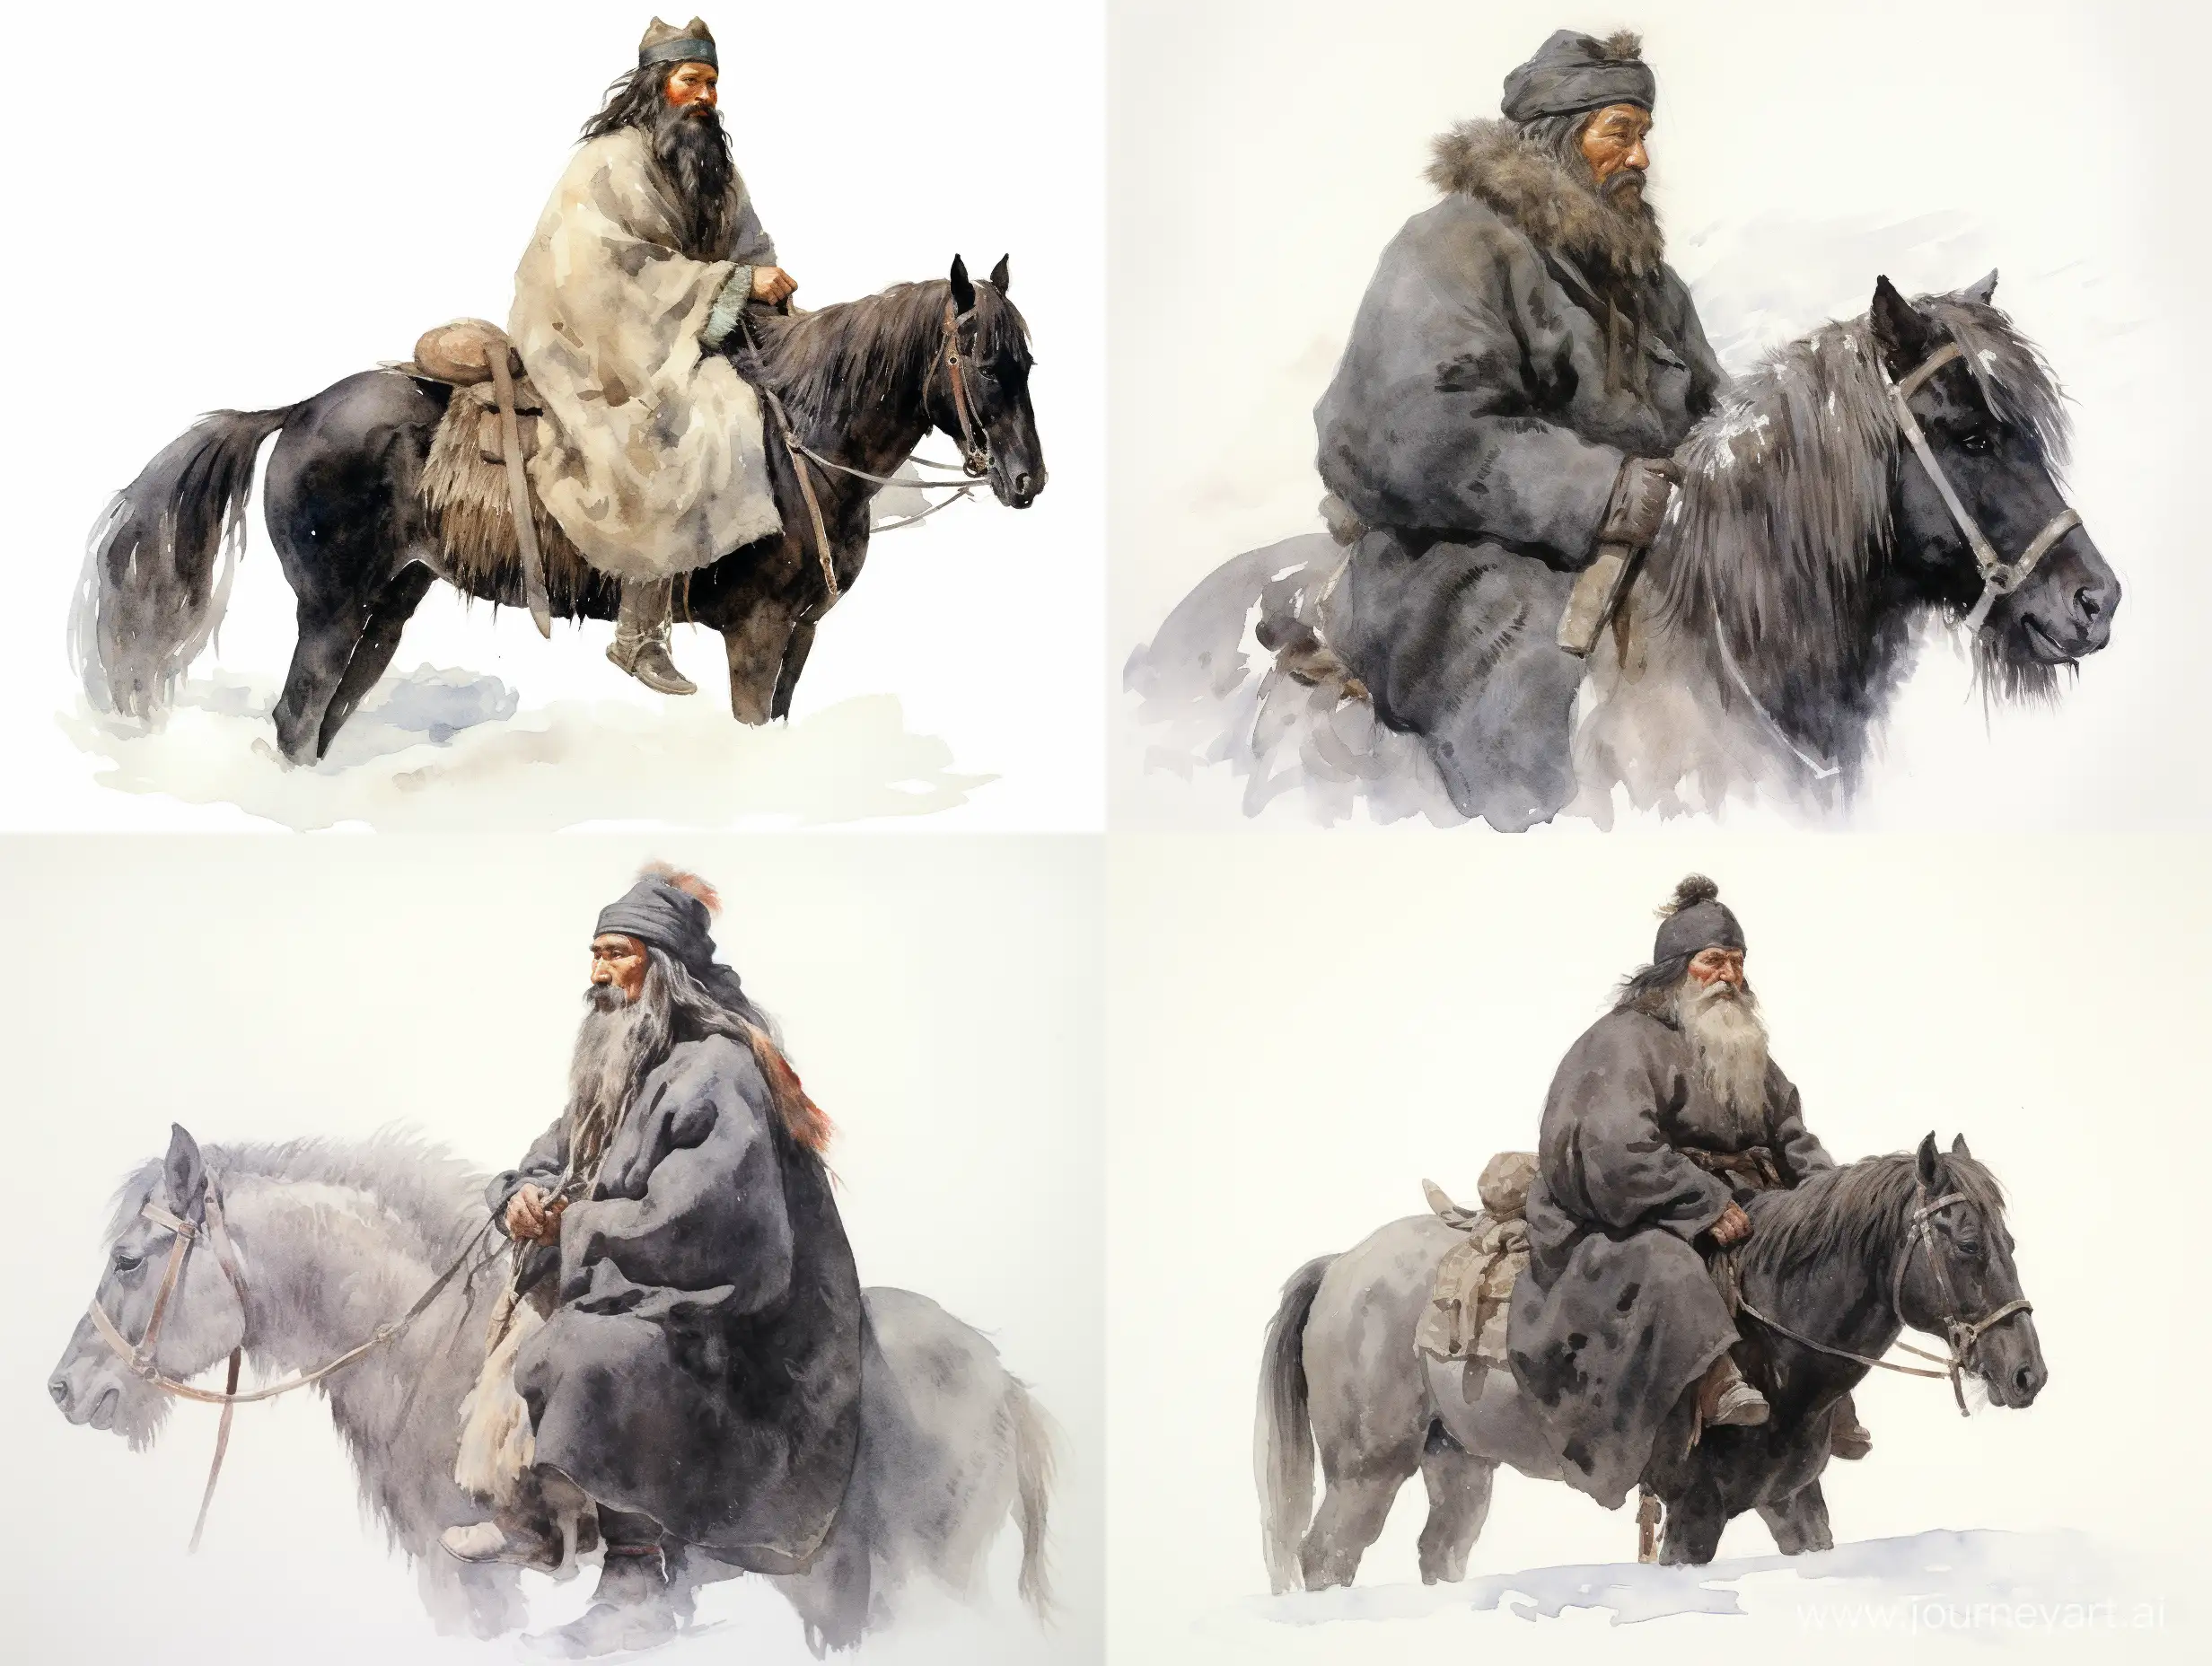 Ivan-Kolodkin-Portrait-of-a-Mustached-Rider-in-Watercolor-Style